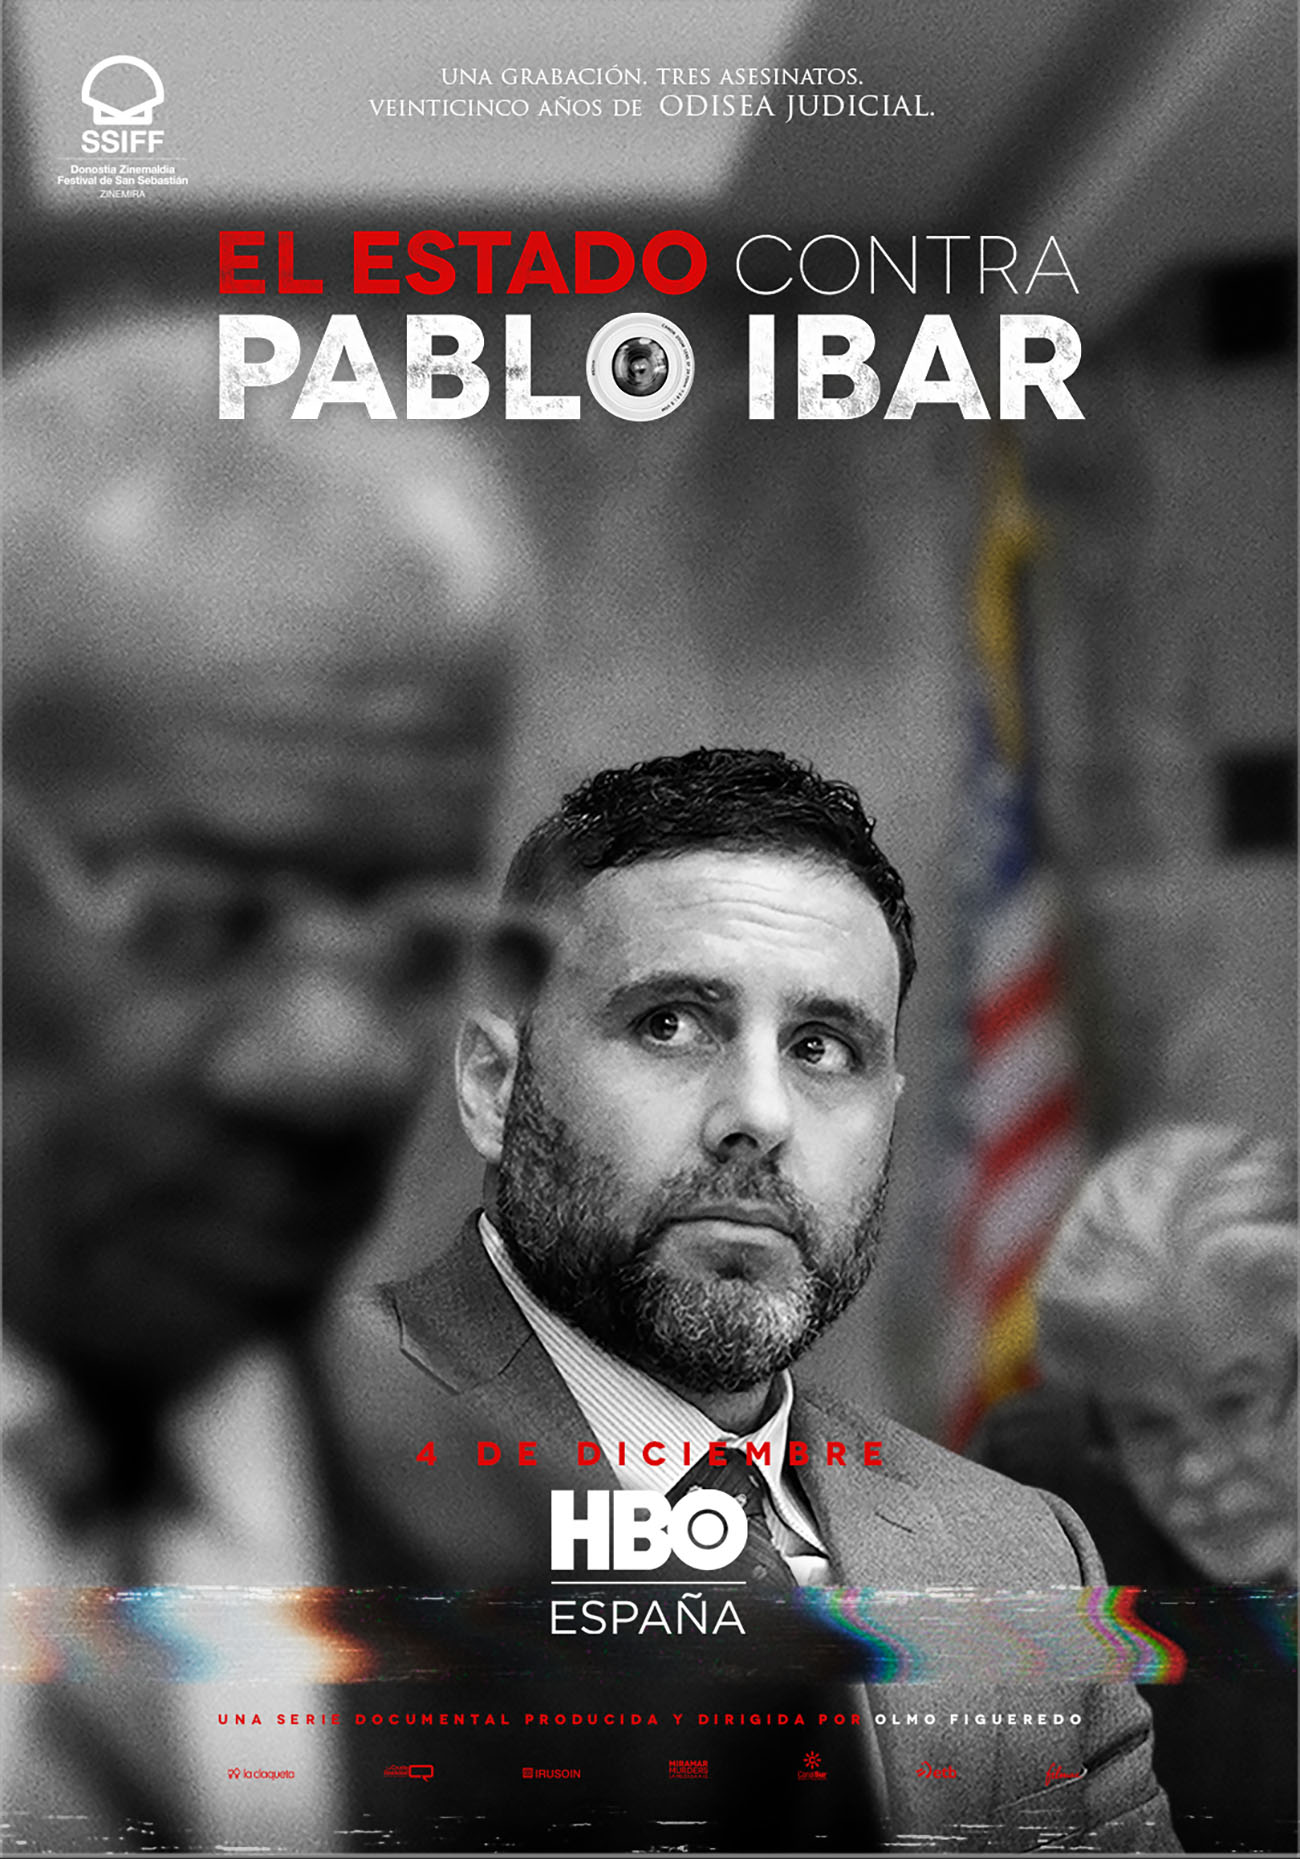 ‘El estado contra Pablo Ibar’, la historia de un español condenado a muerte en USA